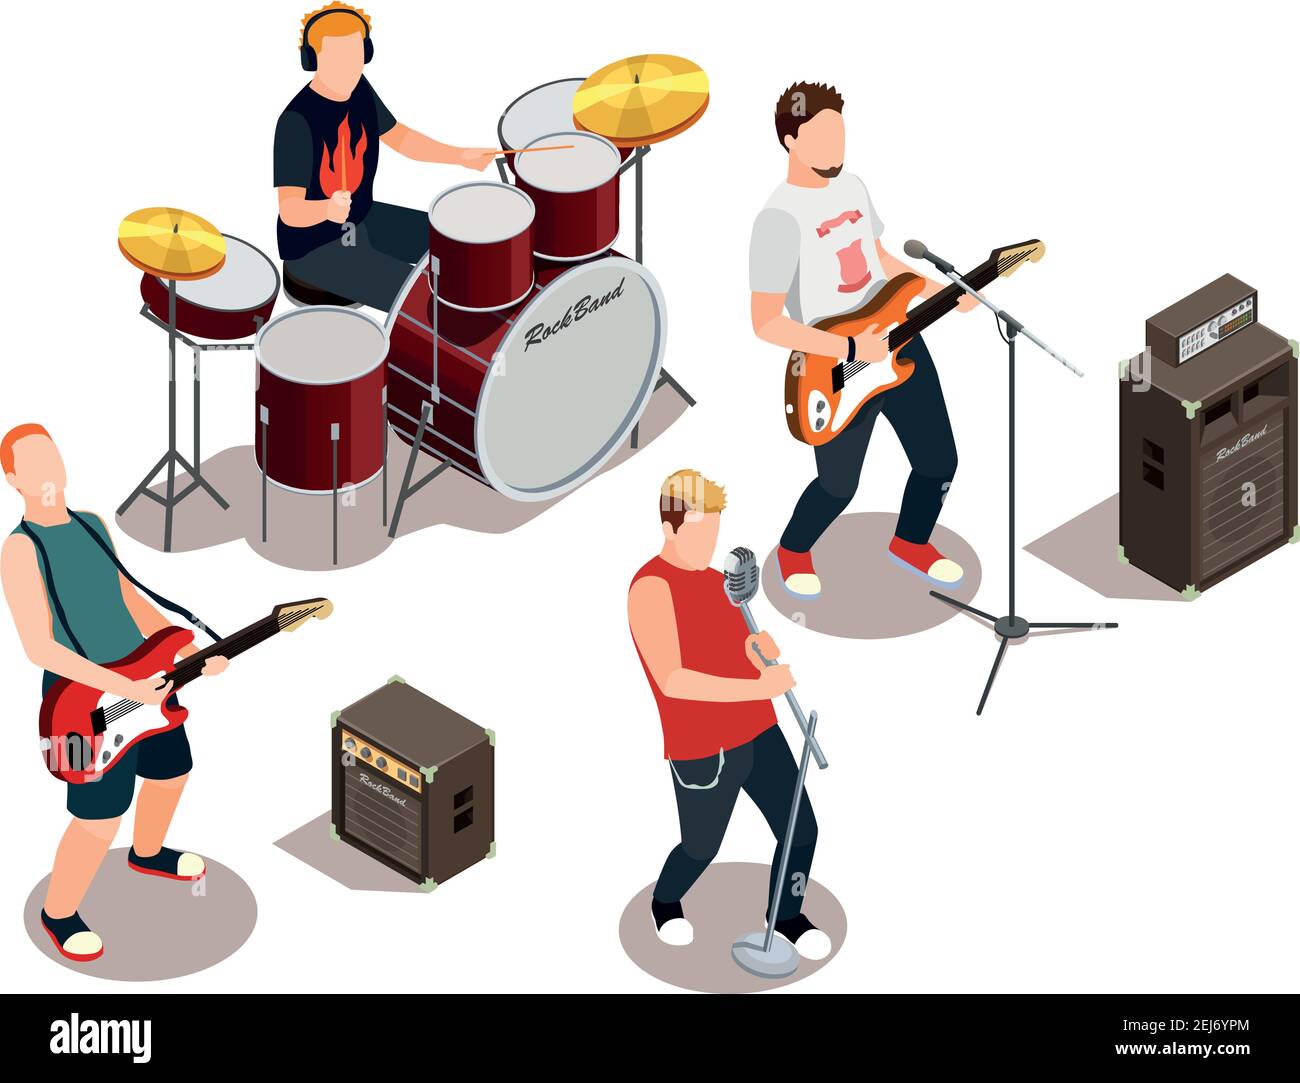 Groupe de rock avec instruments de musique, équipement de concert pendant  la performance composition isométrique sur fond blanc illustration  vectorielle Image Vectorielle Stock - Alamy